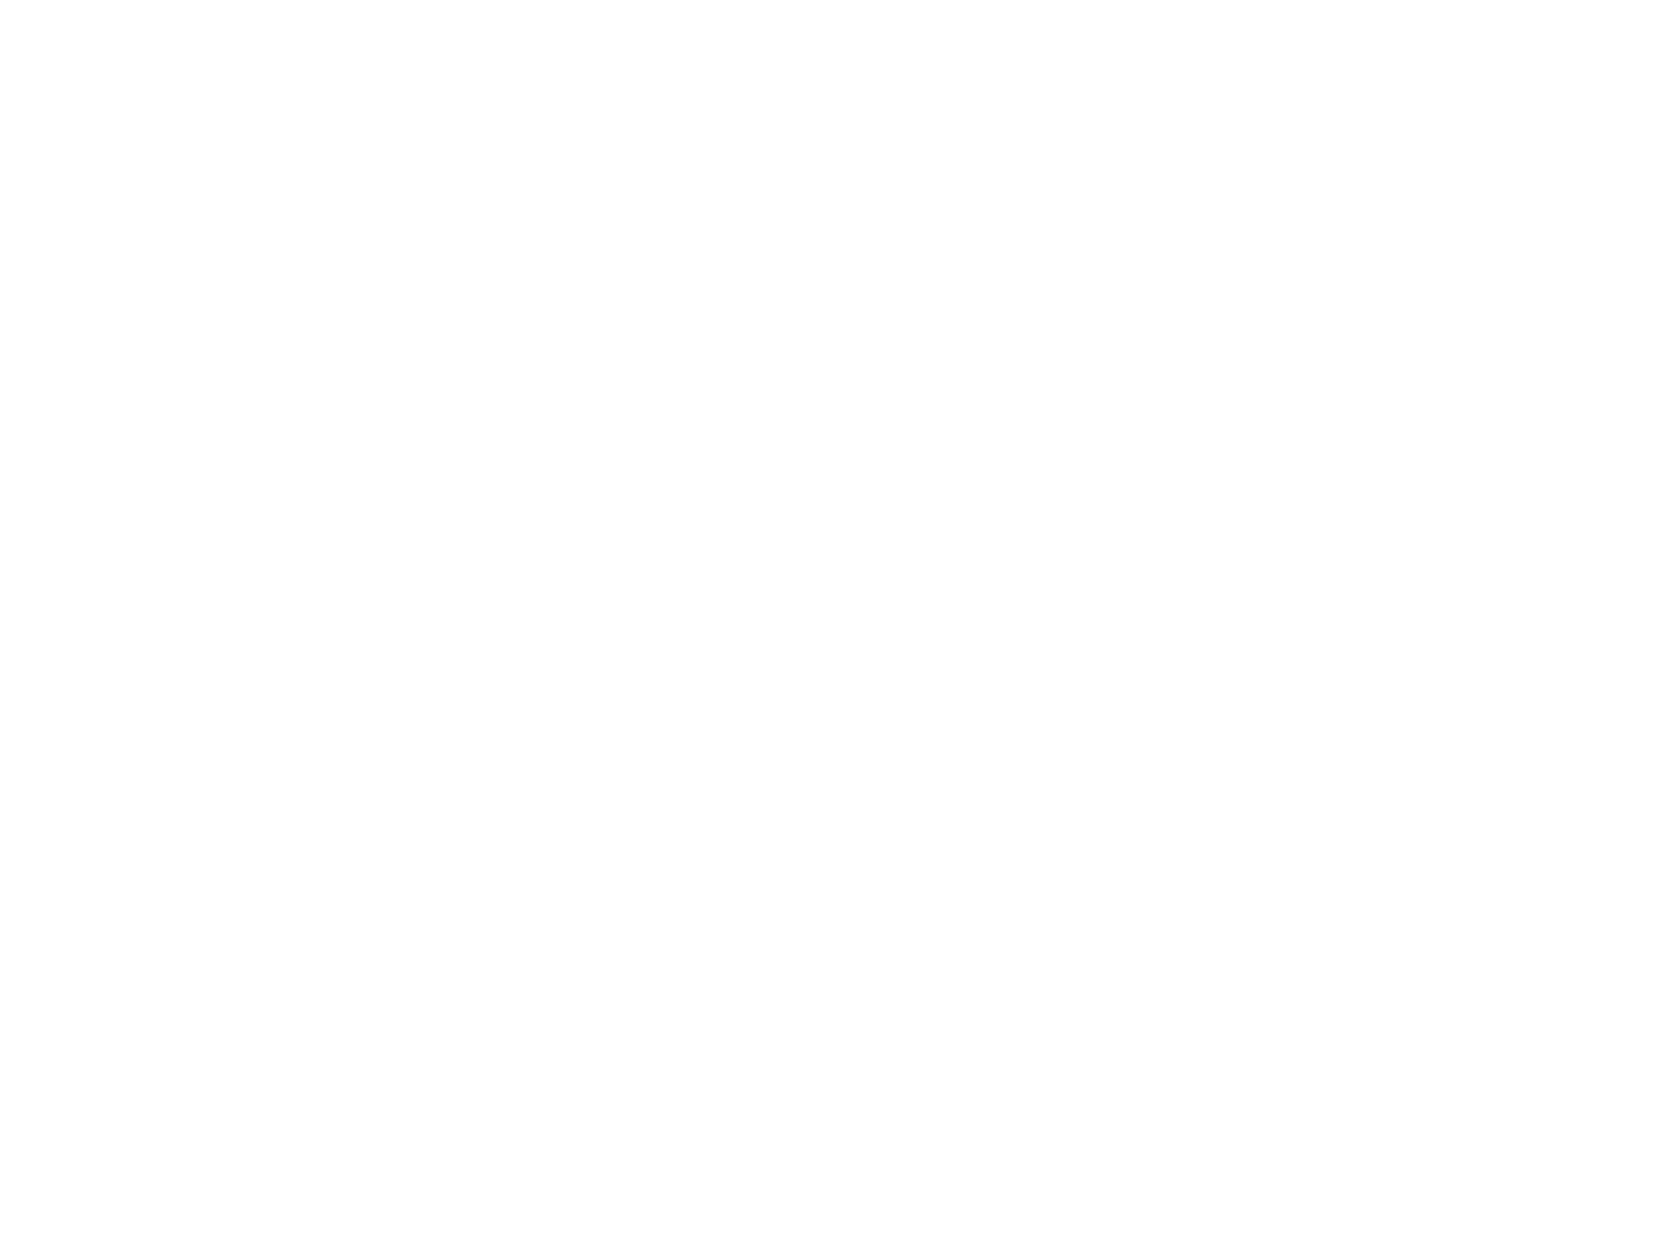 Настольные ламповые часы ИН-14 в корпусе из африканской древесины венге. Корпус часов шоколадно-черного цвета